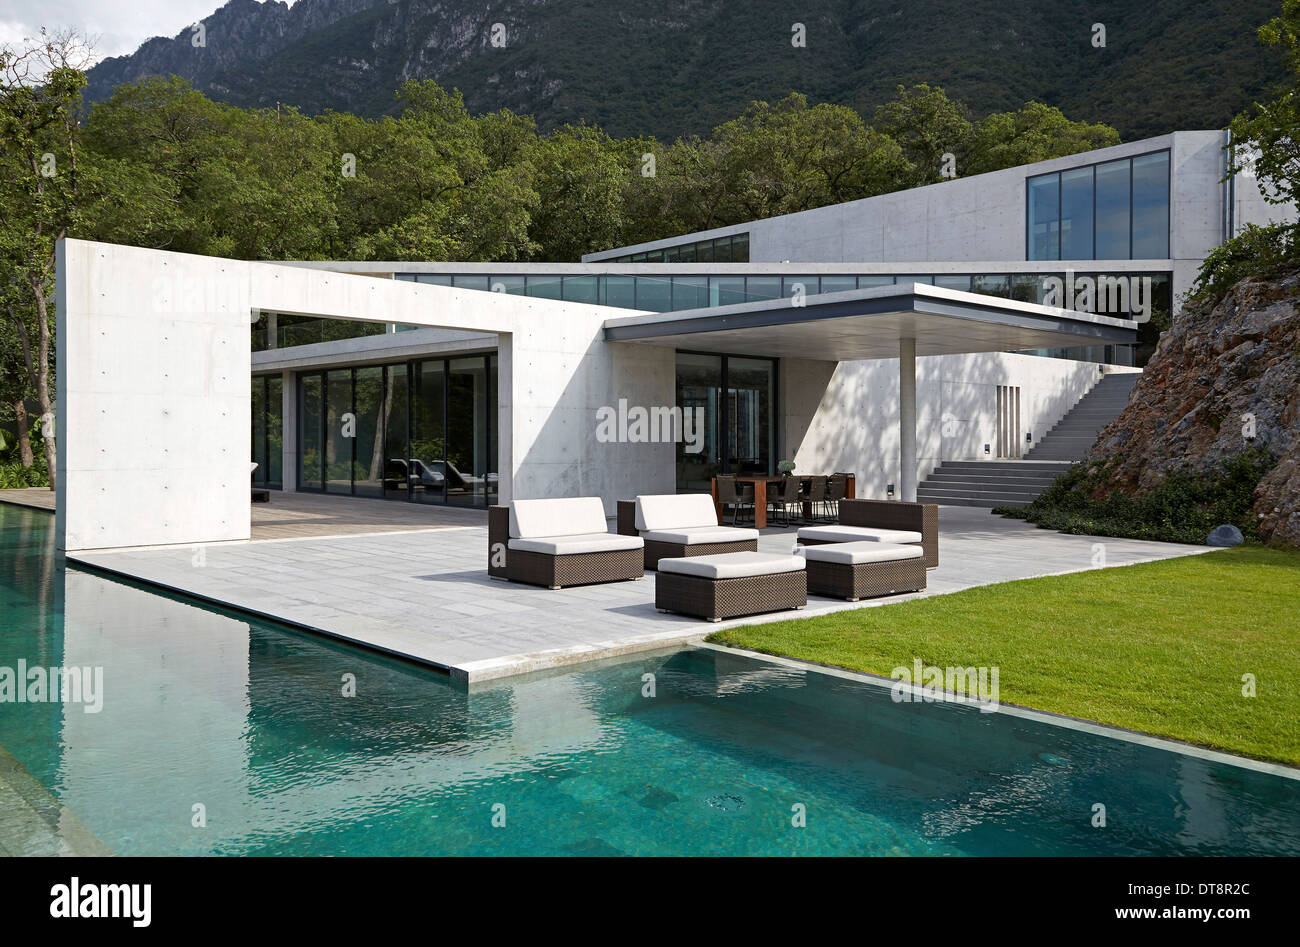 Casa Monterrey, Monterrey, Mexiko. Architekt: Tadao Ando, 2013. Alles in allem Außenansicht mit Sonnenterrasse und Pool. Stockfoto